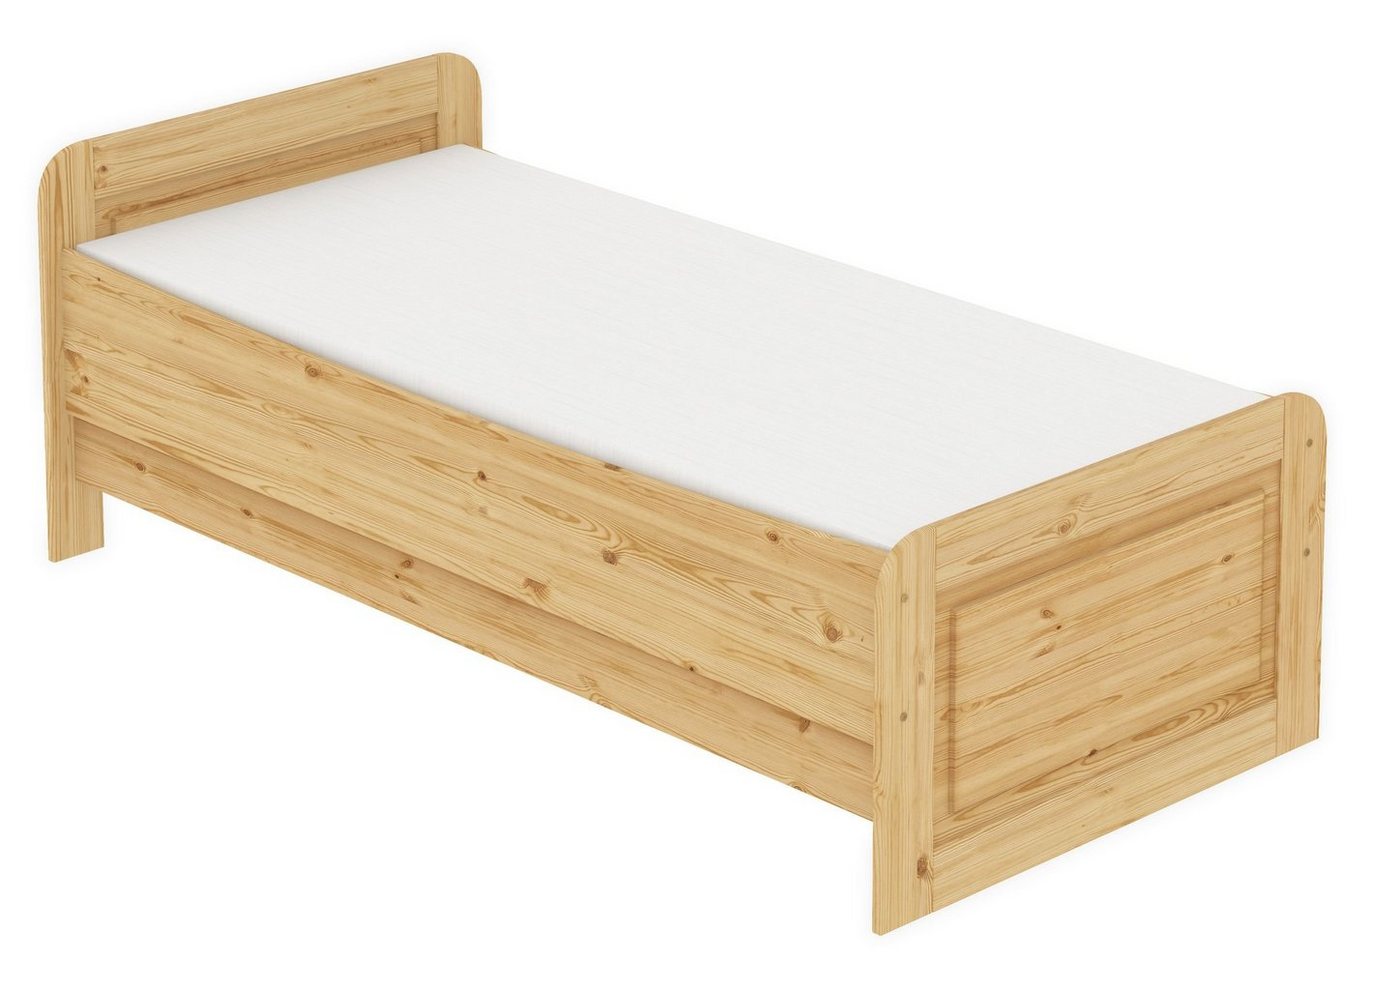 ERST-HOLZ Bett Holzbett 90x200 Kiefer massiv mit Federleisten und Matratze, Kieferfarblos lackiert von ERST-HOLZ